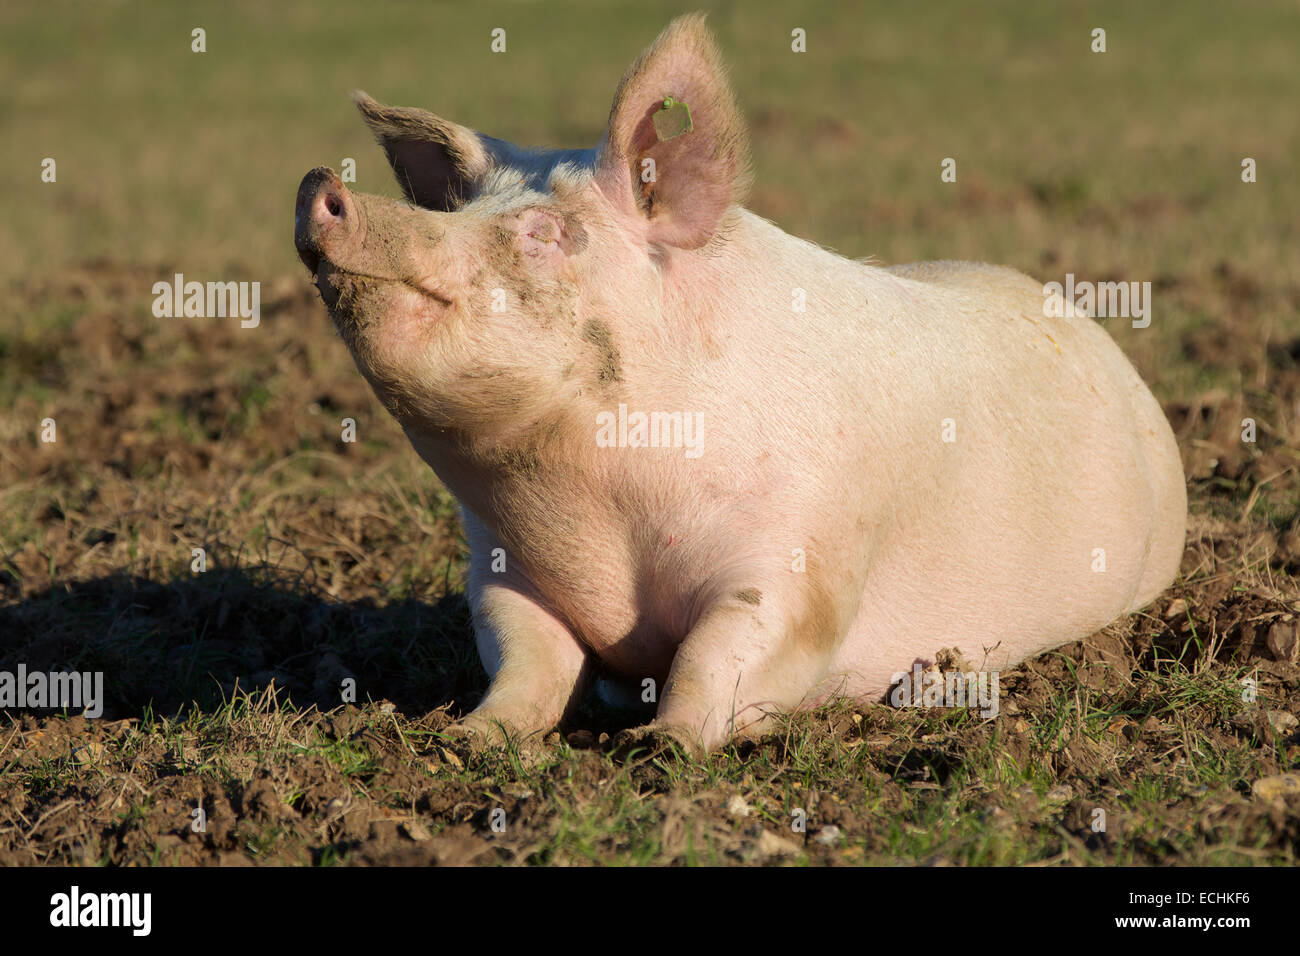 Cochon de contentement. Cochon rose solitaire se vautrer dans un champ boueux. La tête et le nez en l'air en prenant au soleil. Banque D'Images